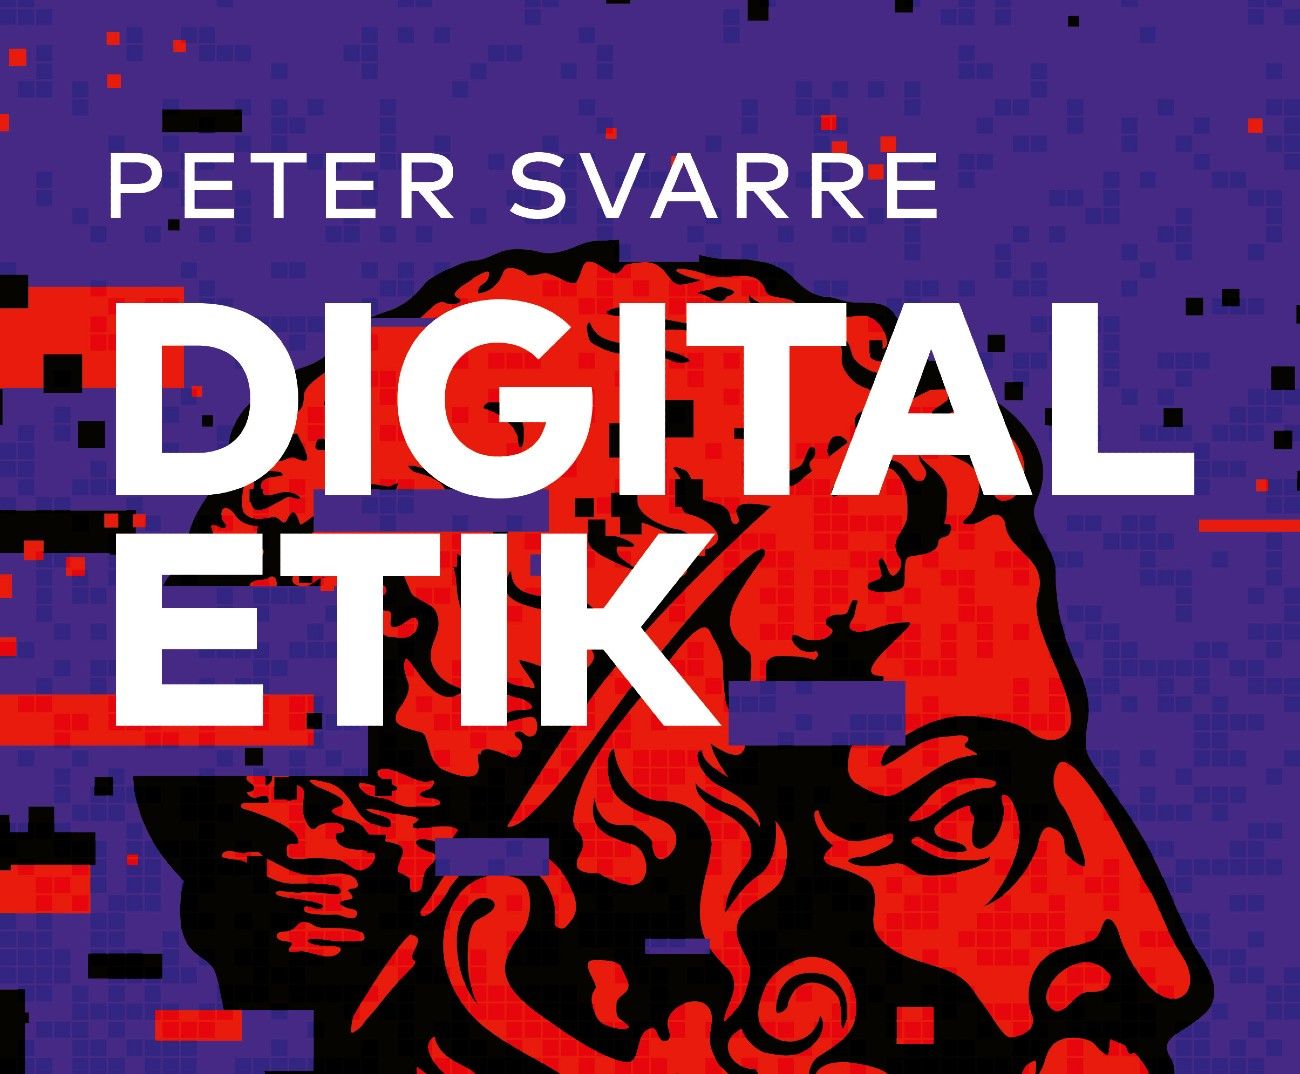 Anmeldelse af Peter Svarres Digital Etik. Er den værd at læse?